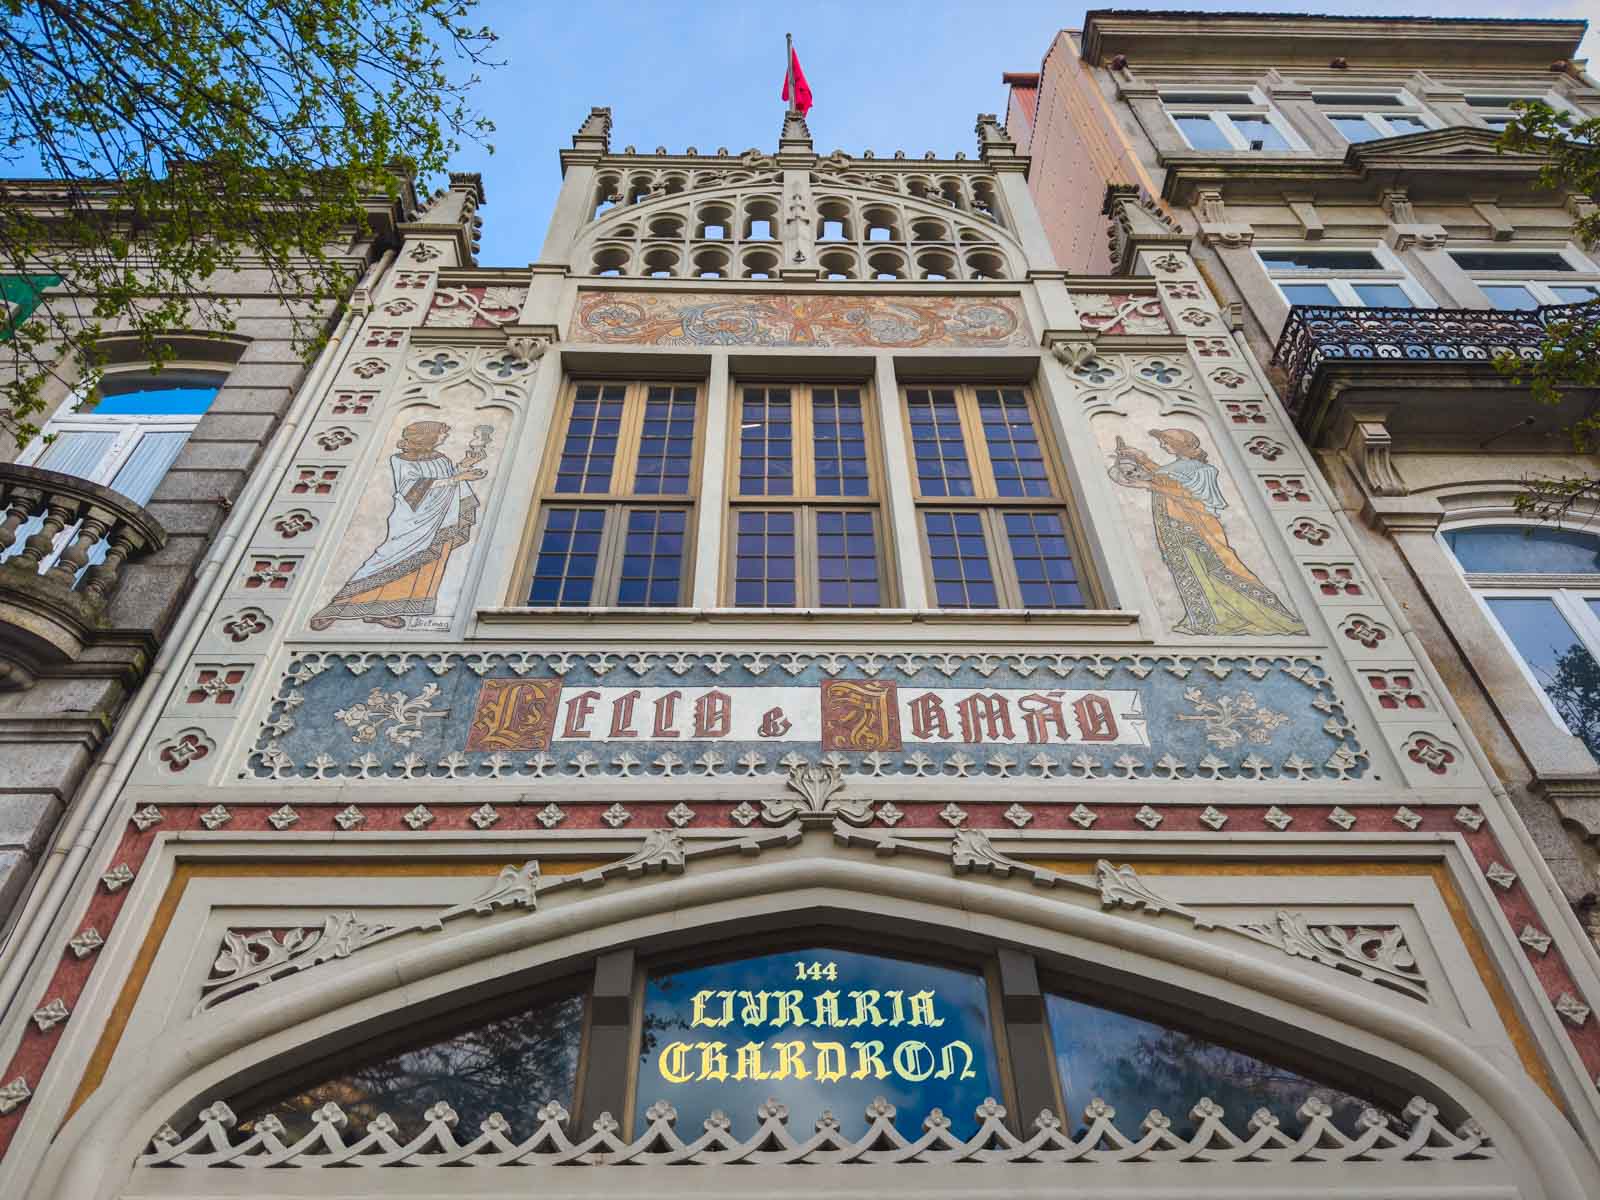 Livraria Lello, a beautiful and historic bookstore in Porto